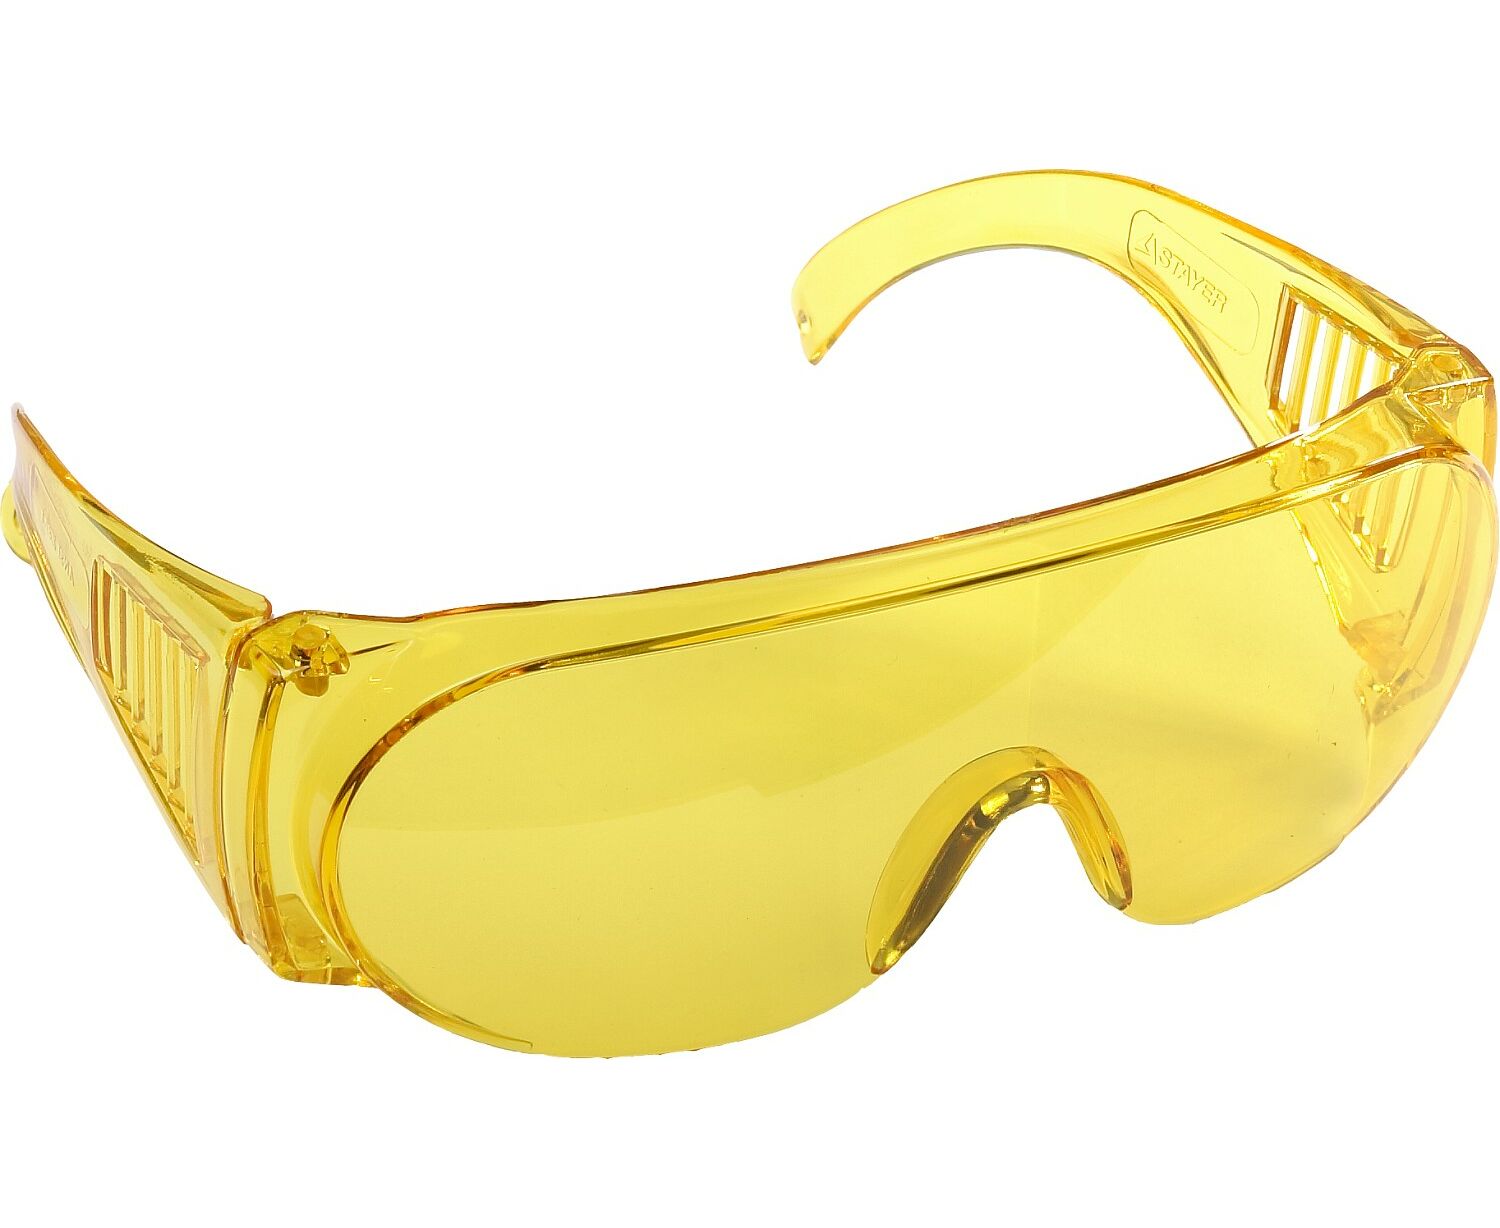 Защитные очки STAYER MX-3 защитные закрытые очки росомз зн11 panorama strongglassтм 3 pc 21127 с непрямой вентиляцией